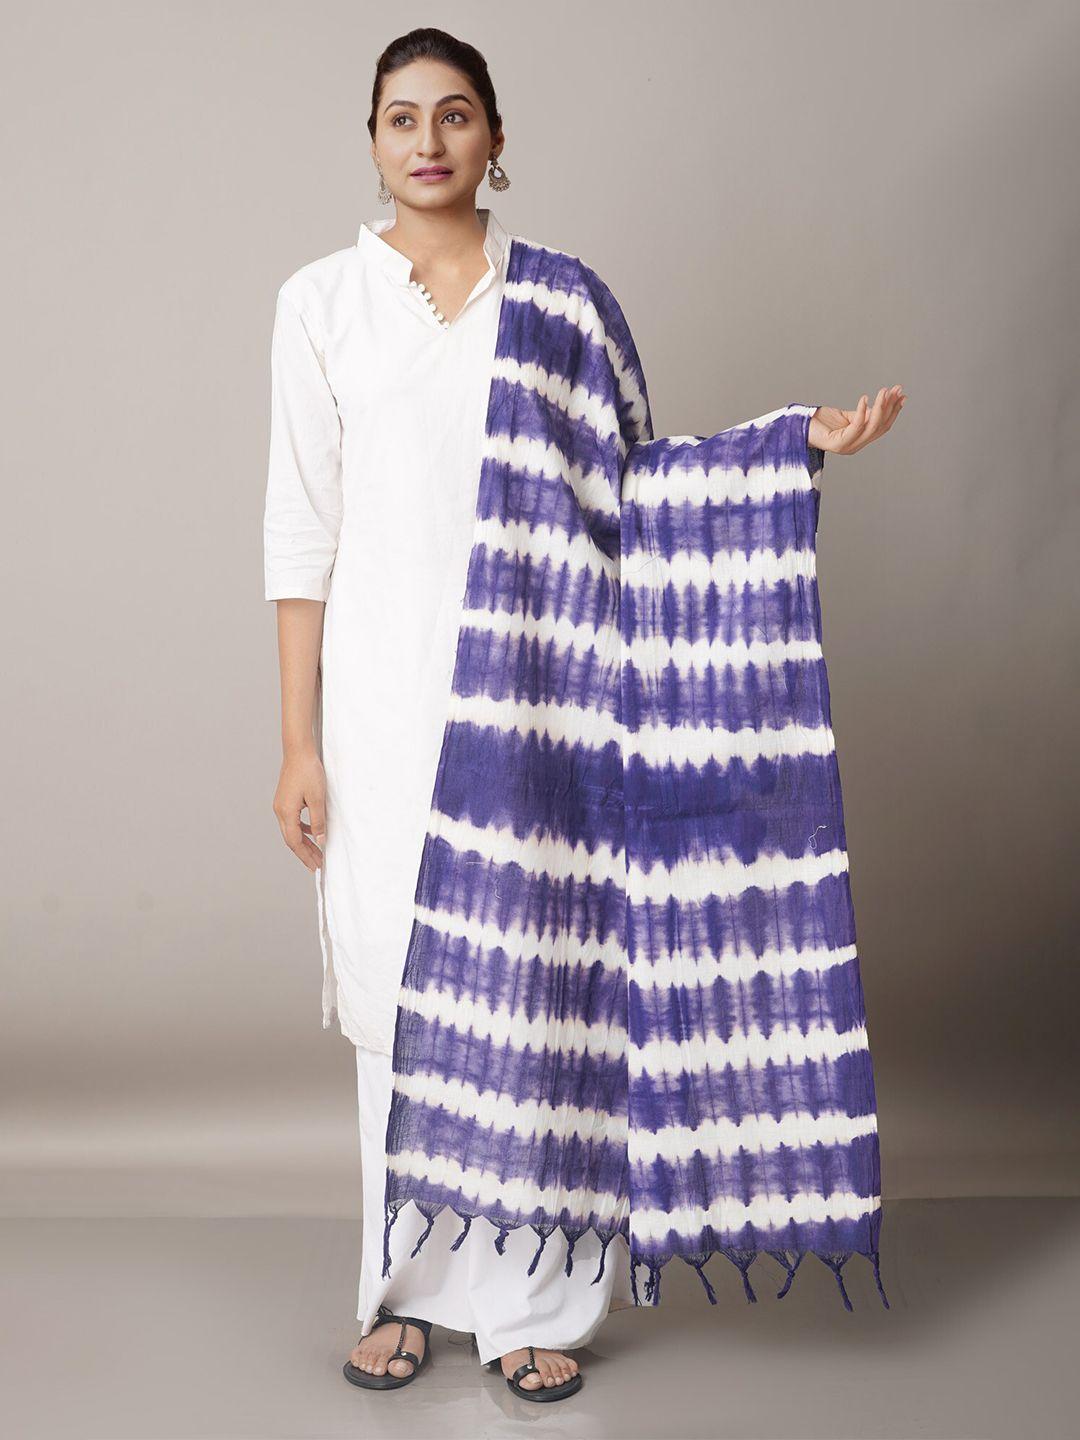 unnati silks navy blue & white striped pure cotton shibori dupatta